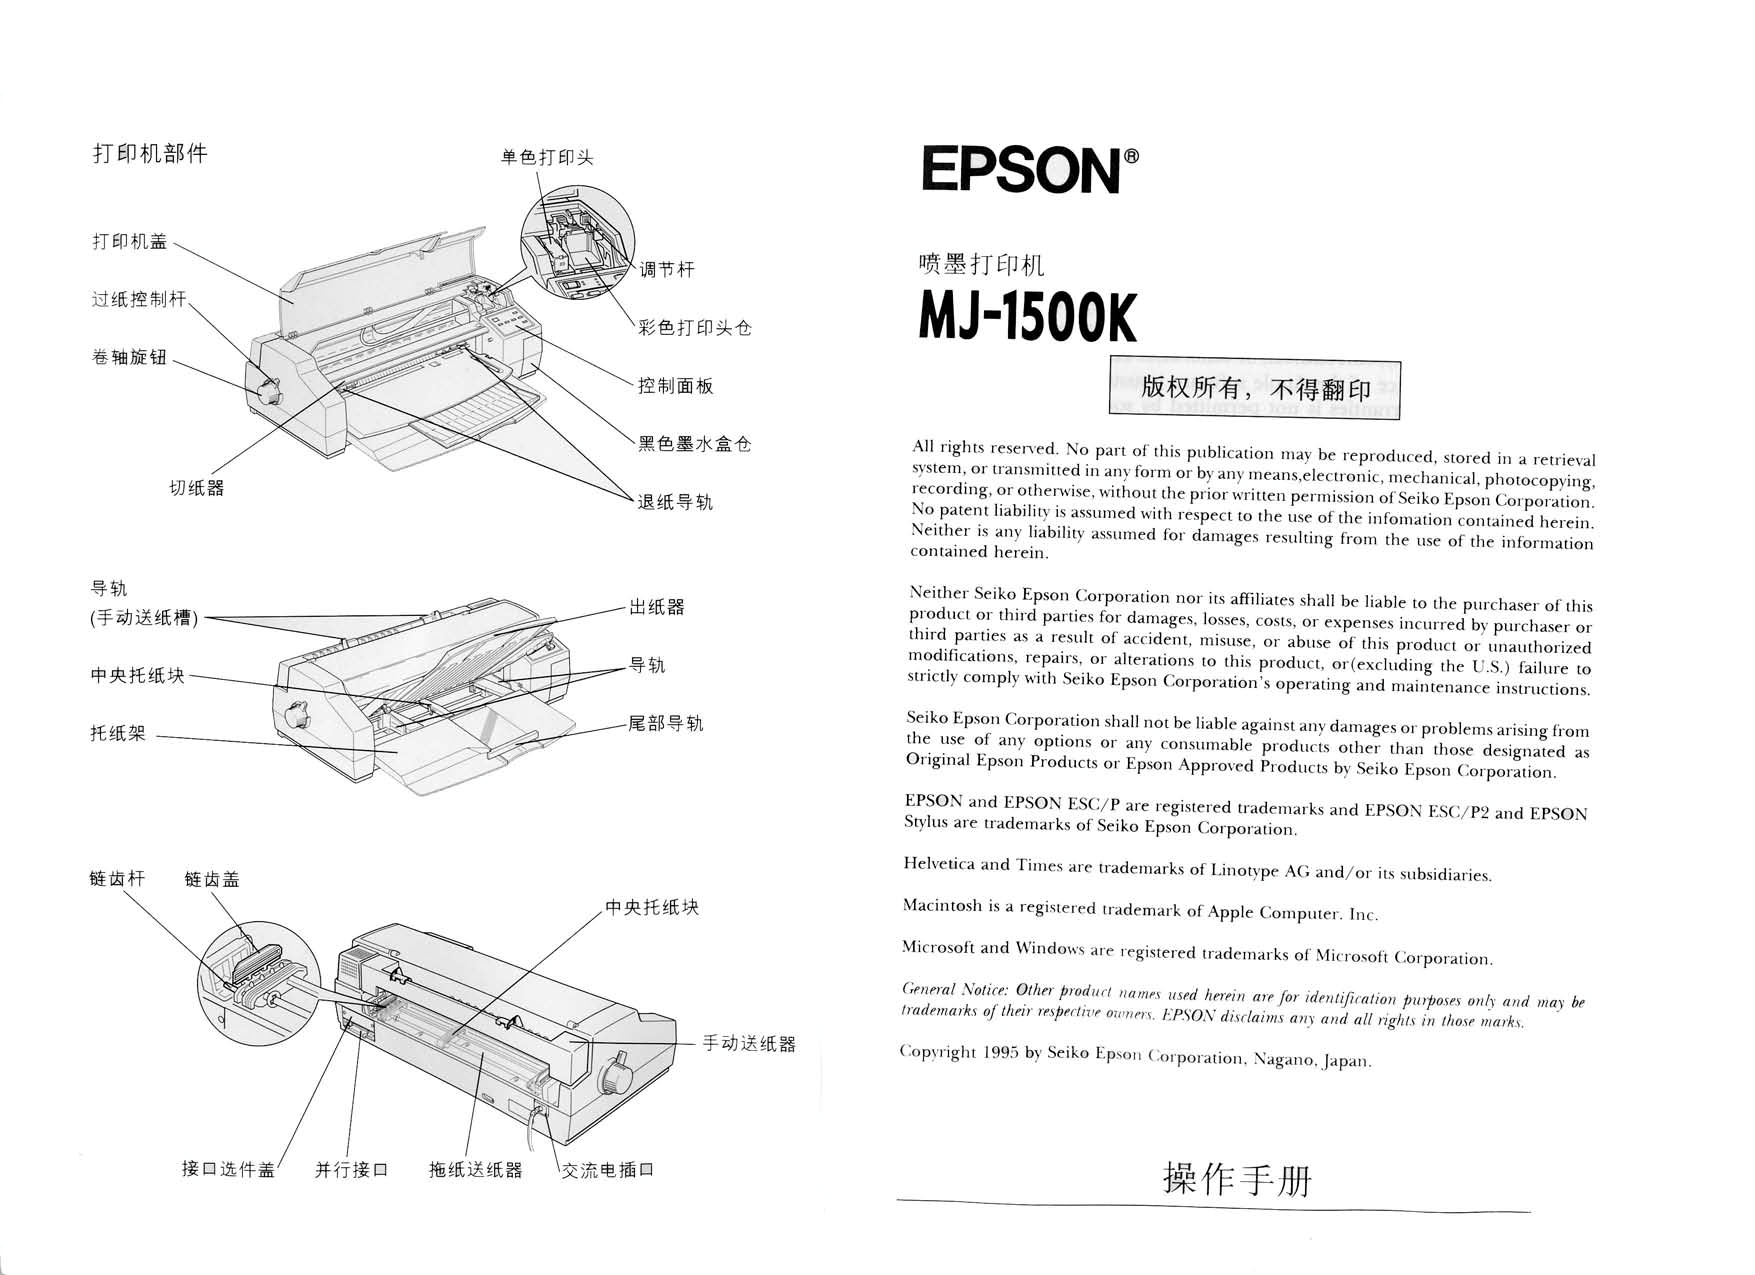 爱普生 Epson MJ-1500K 操作手册 第1页